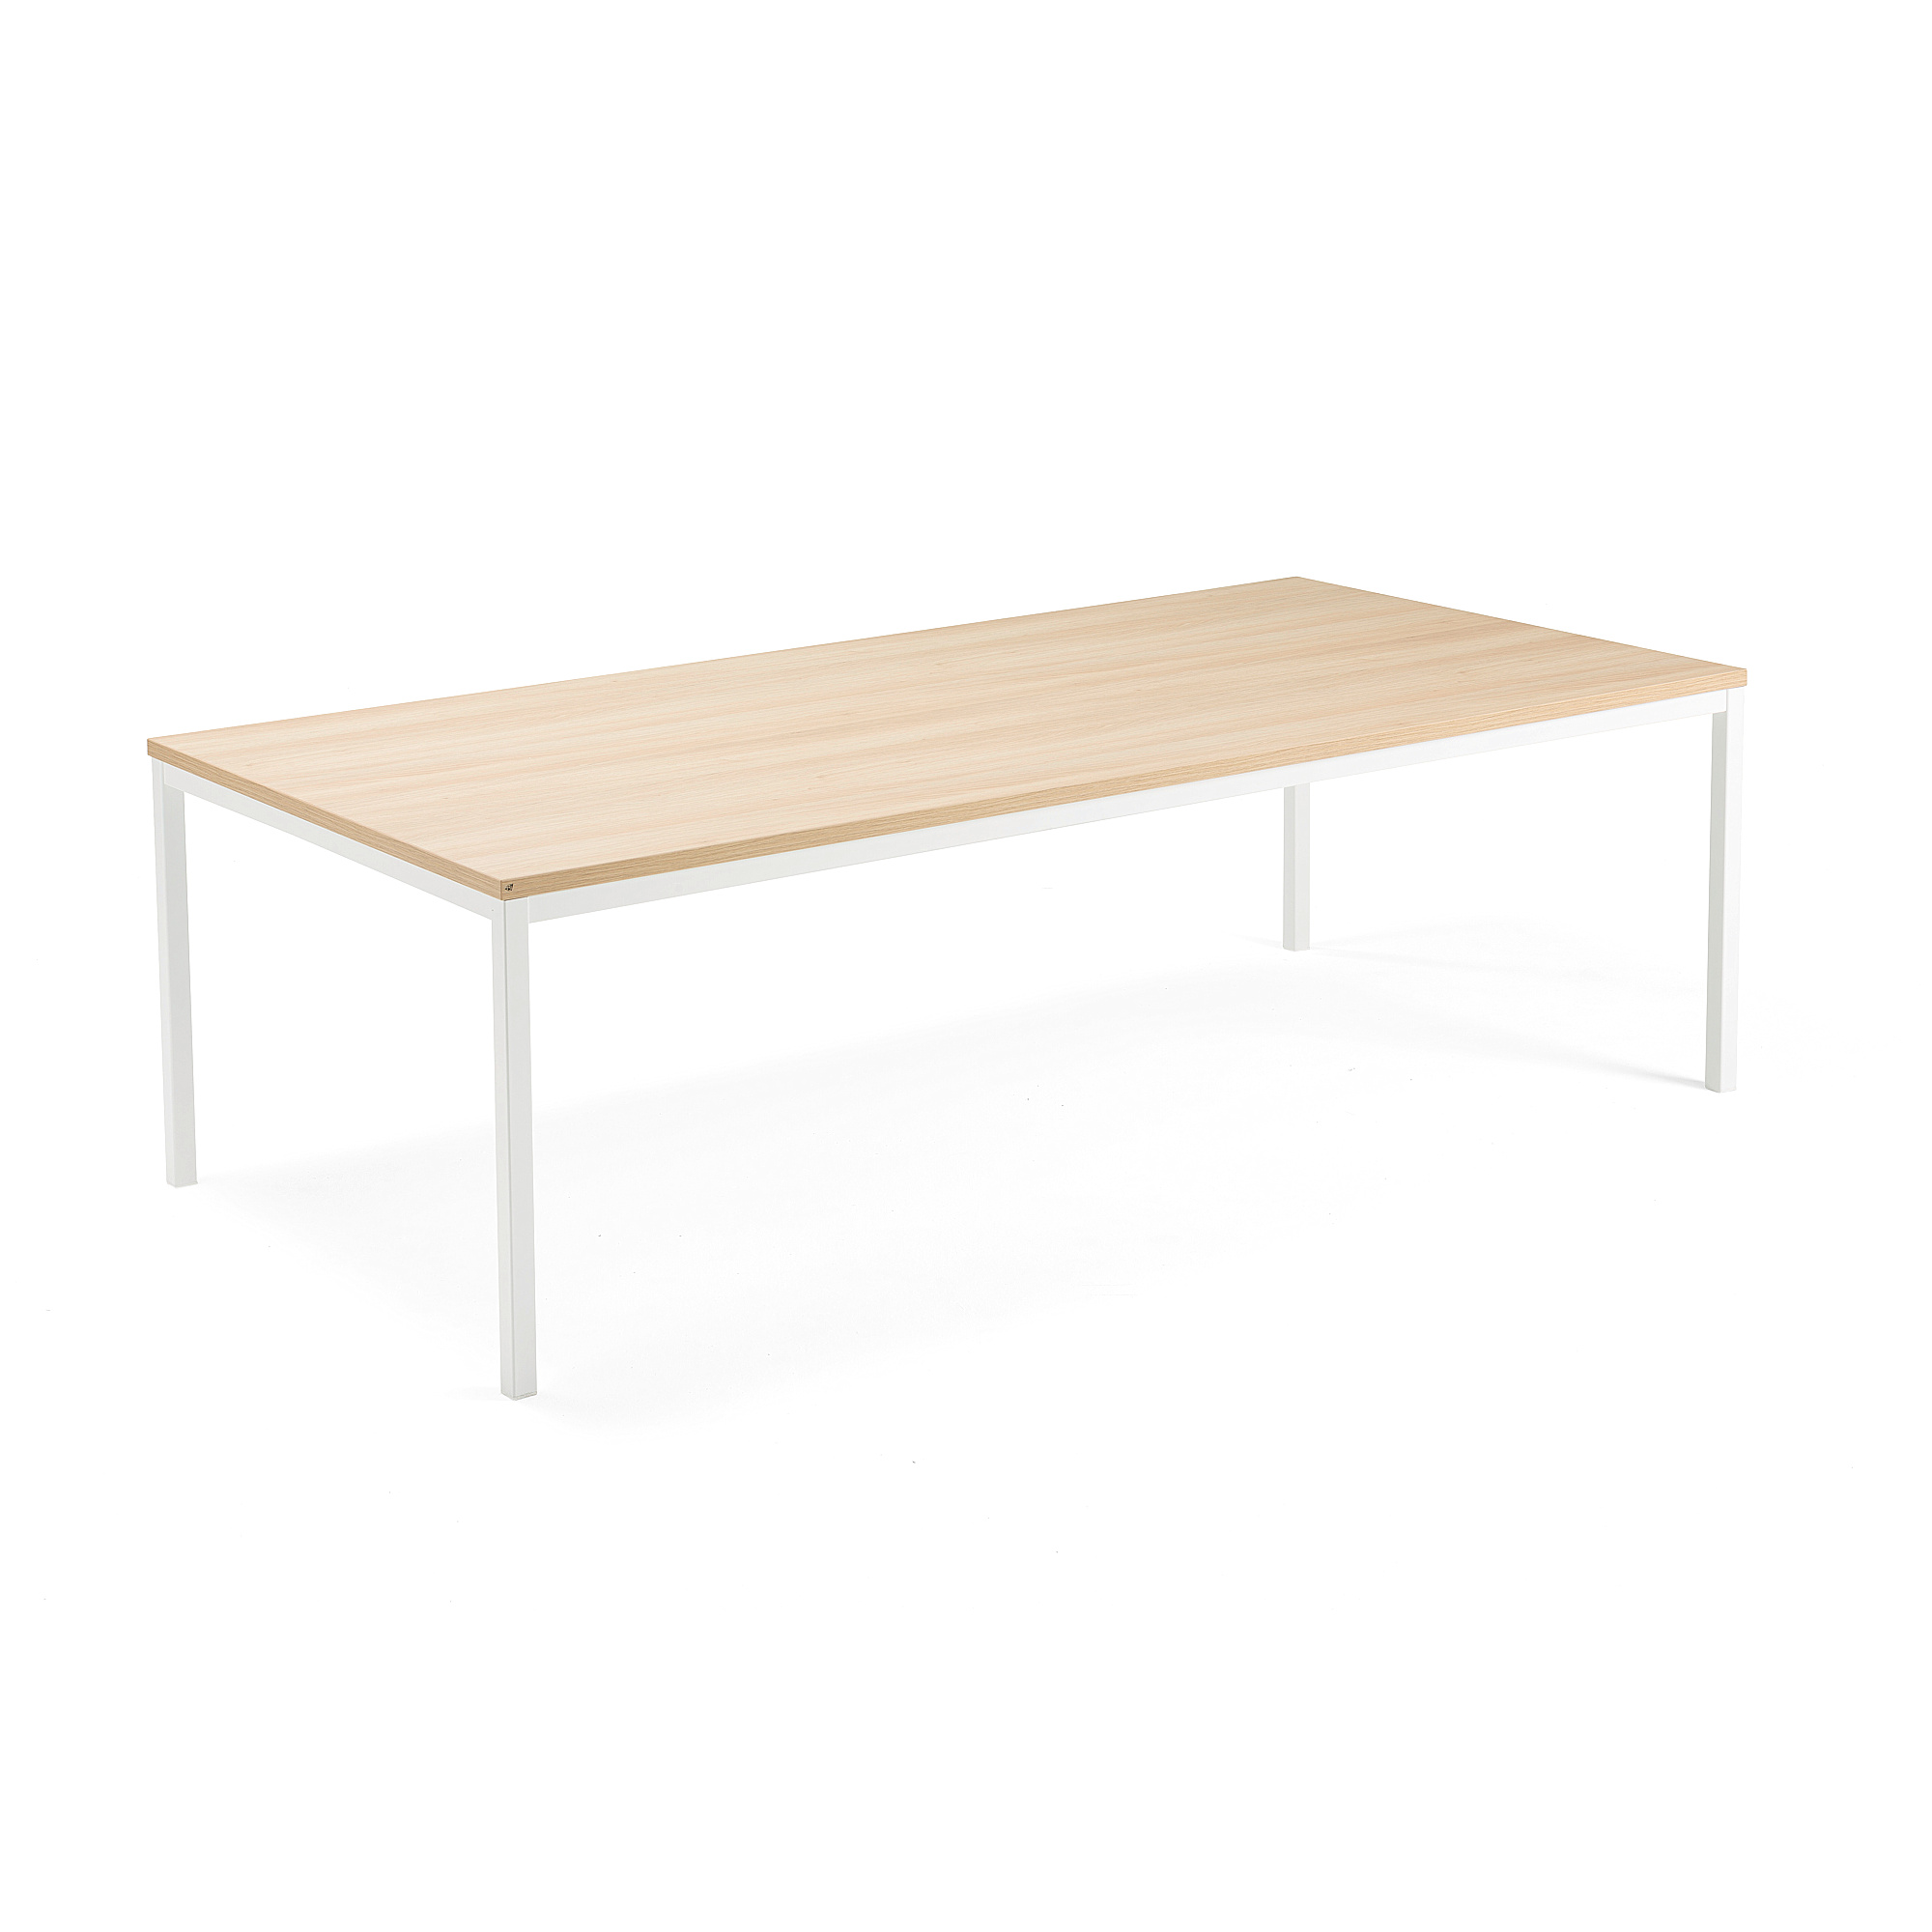 Jednací stůl QBUS, 2400x1200 mm, 4 nohy, bílý rám, dub